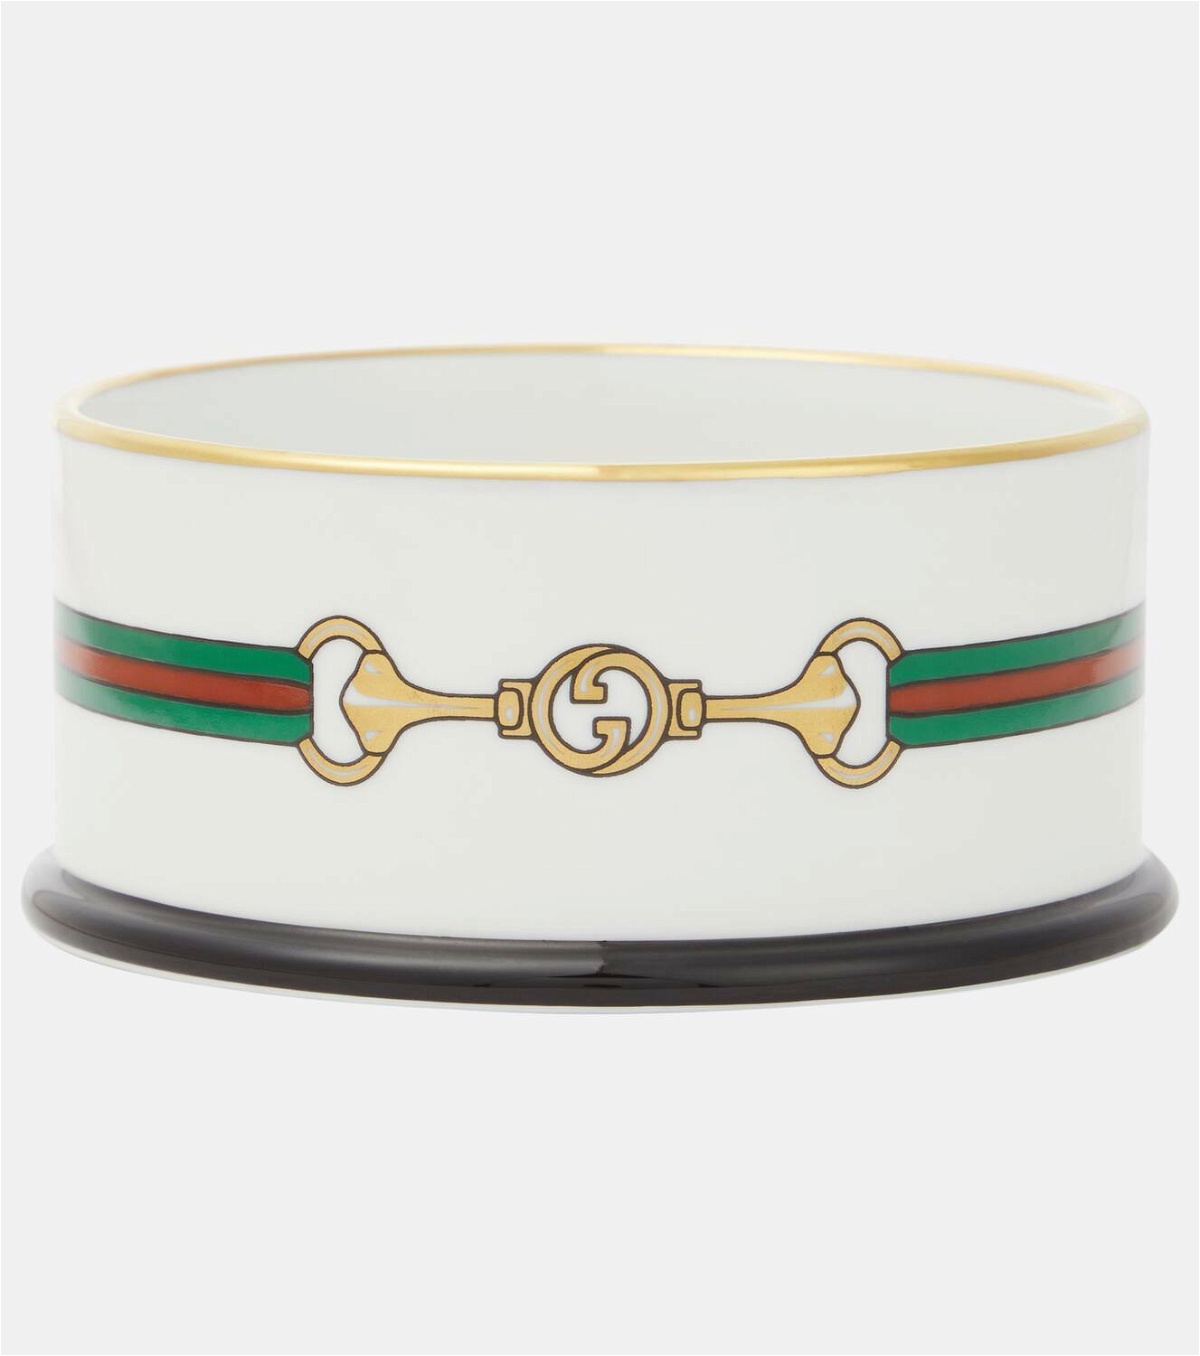 Gucci Porcelain dog bowl